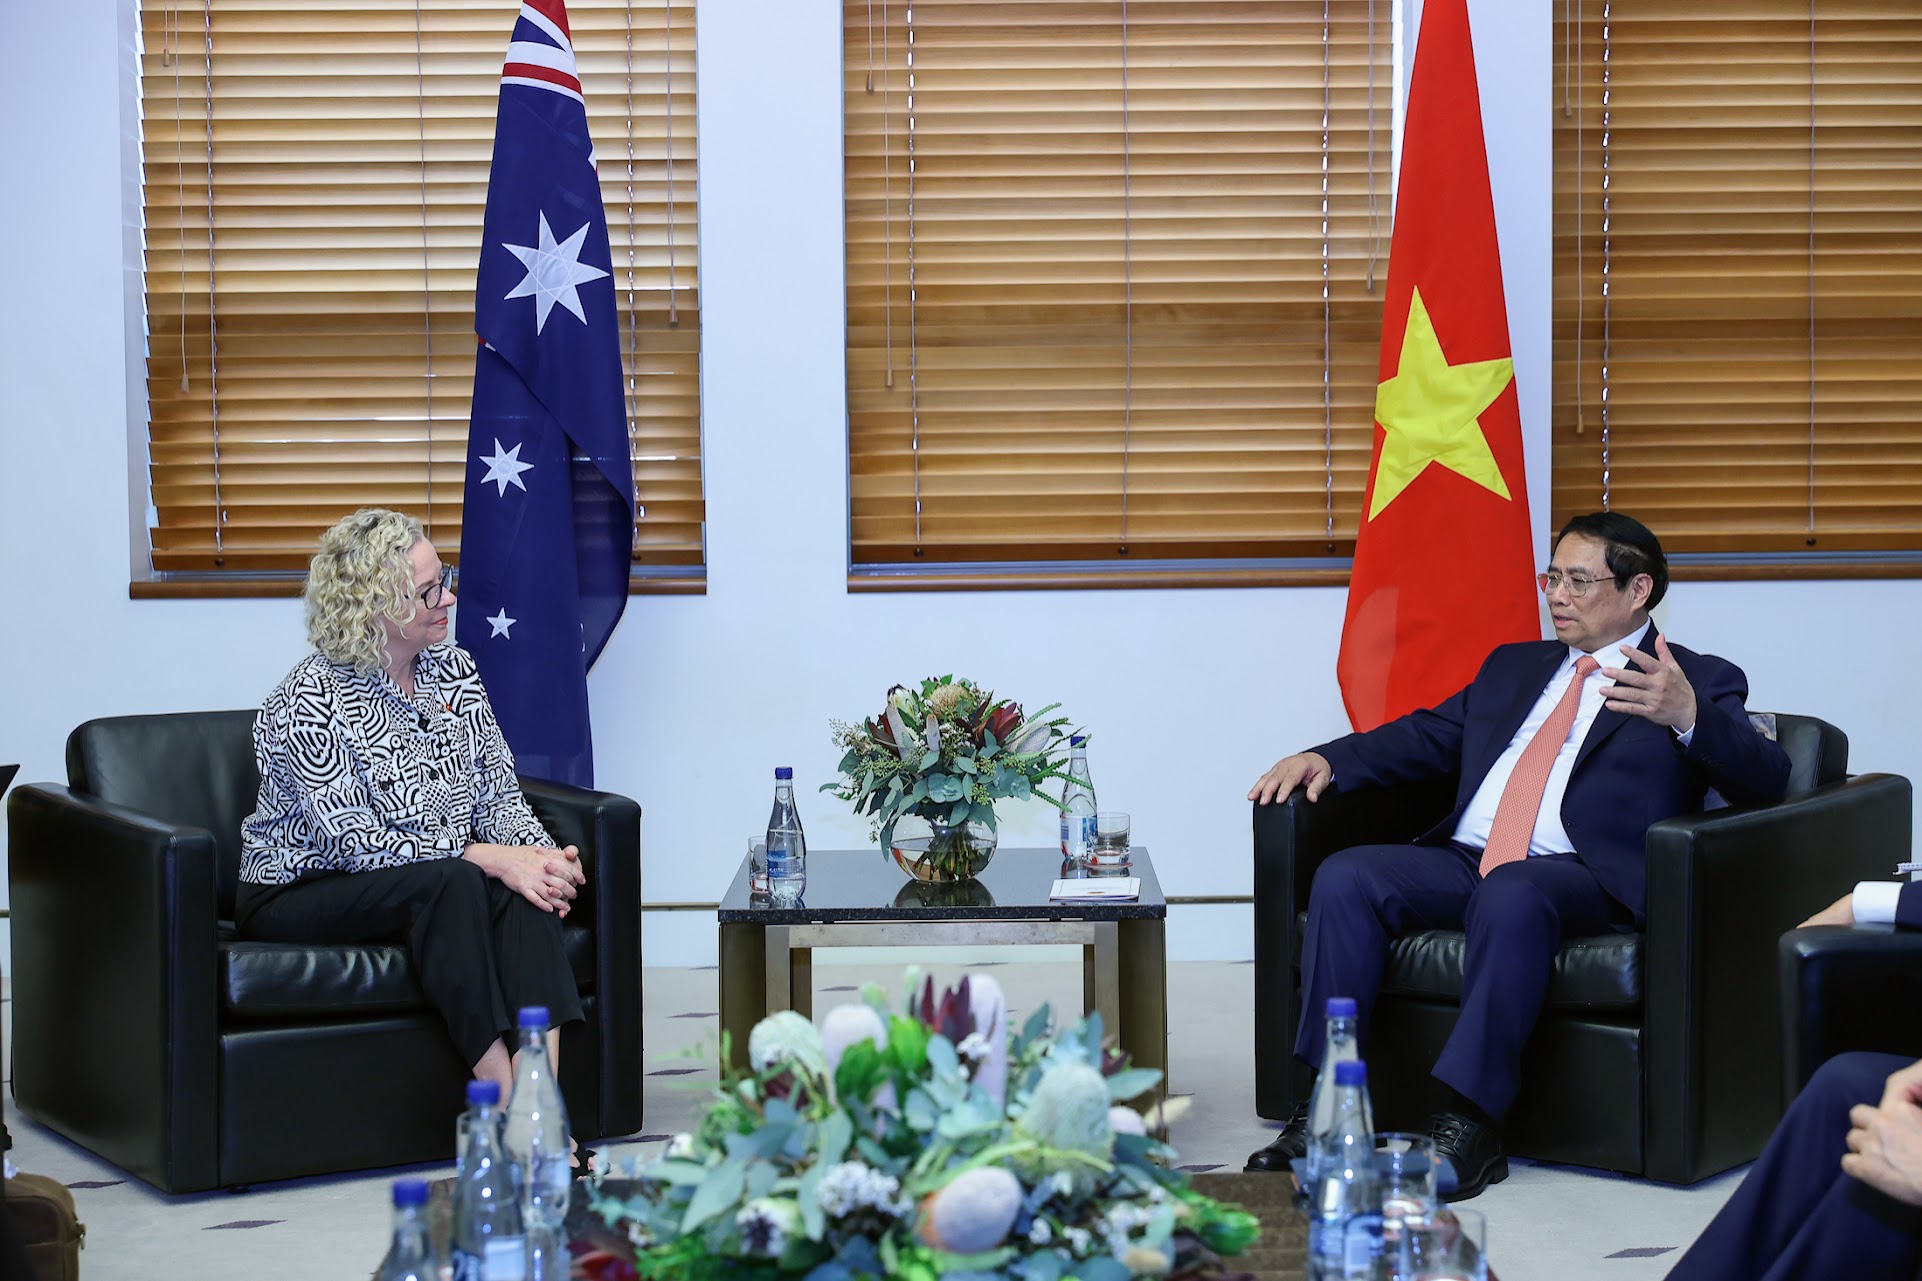 Thủ tướng đề nghị Quốc hội, Nghị viện hai nước tiếp tục ủng hộ và giám sát việc triển khai, cụ thể hóa các cam kết giữa Chính phủ hai nước, hiện thực hóa quan hệ Đối tác Chiến lược toàn diện Việt Nam-Australia ngày càng đi vào chiều sâu, thiết thực, hiệu quả - Ảnh: VGP/Nhật Bắc